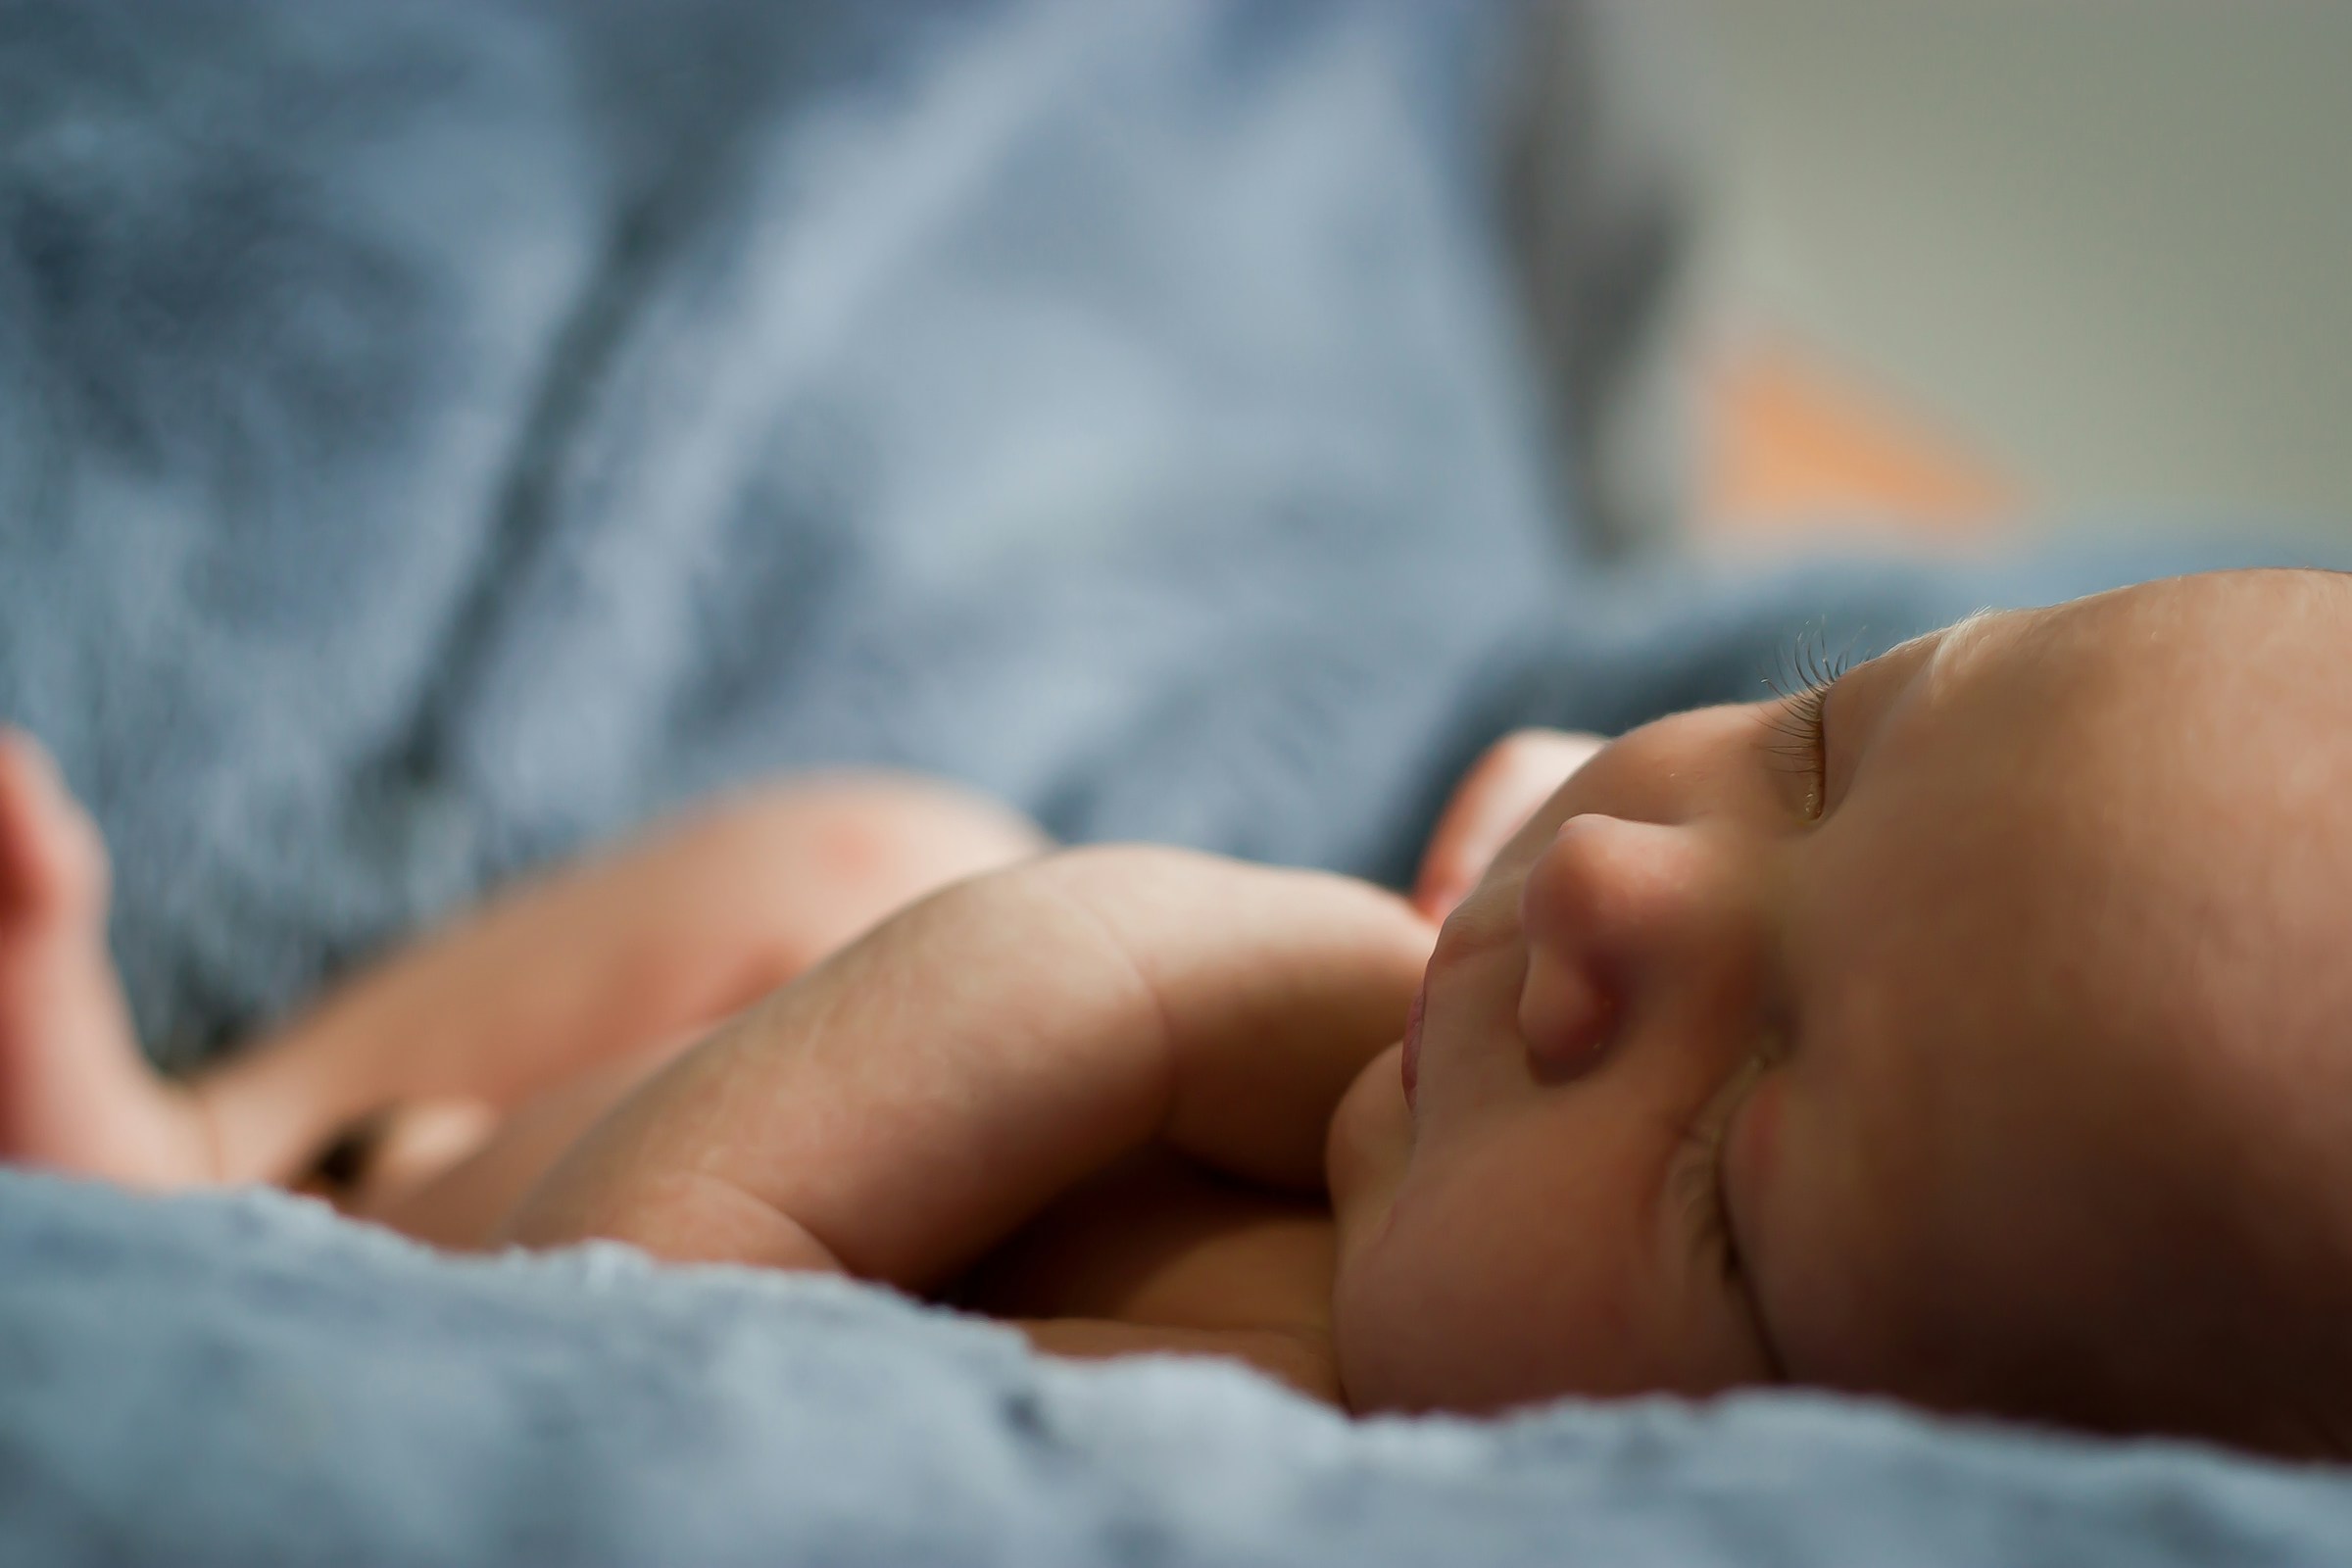 A cute newborn baby | Source: Unsplash